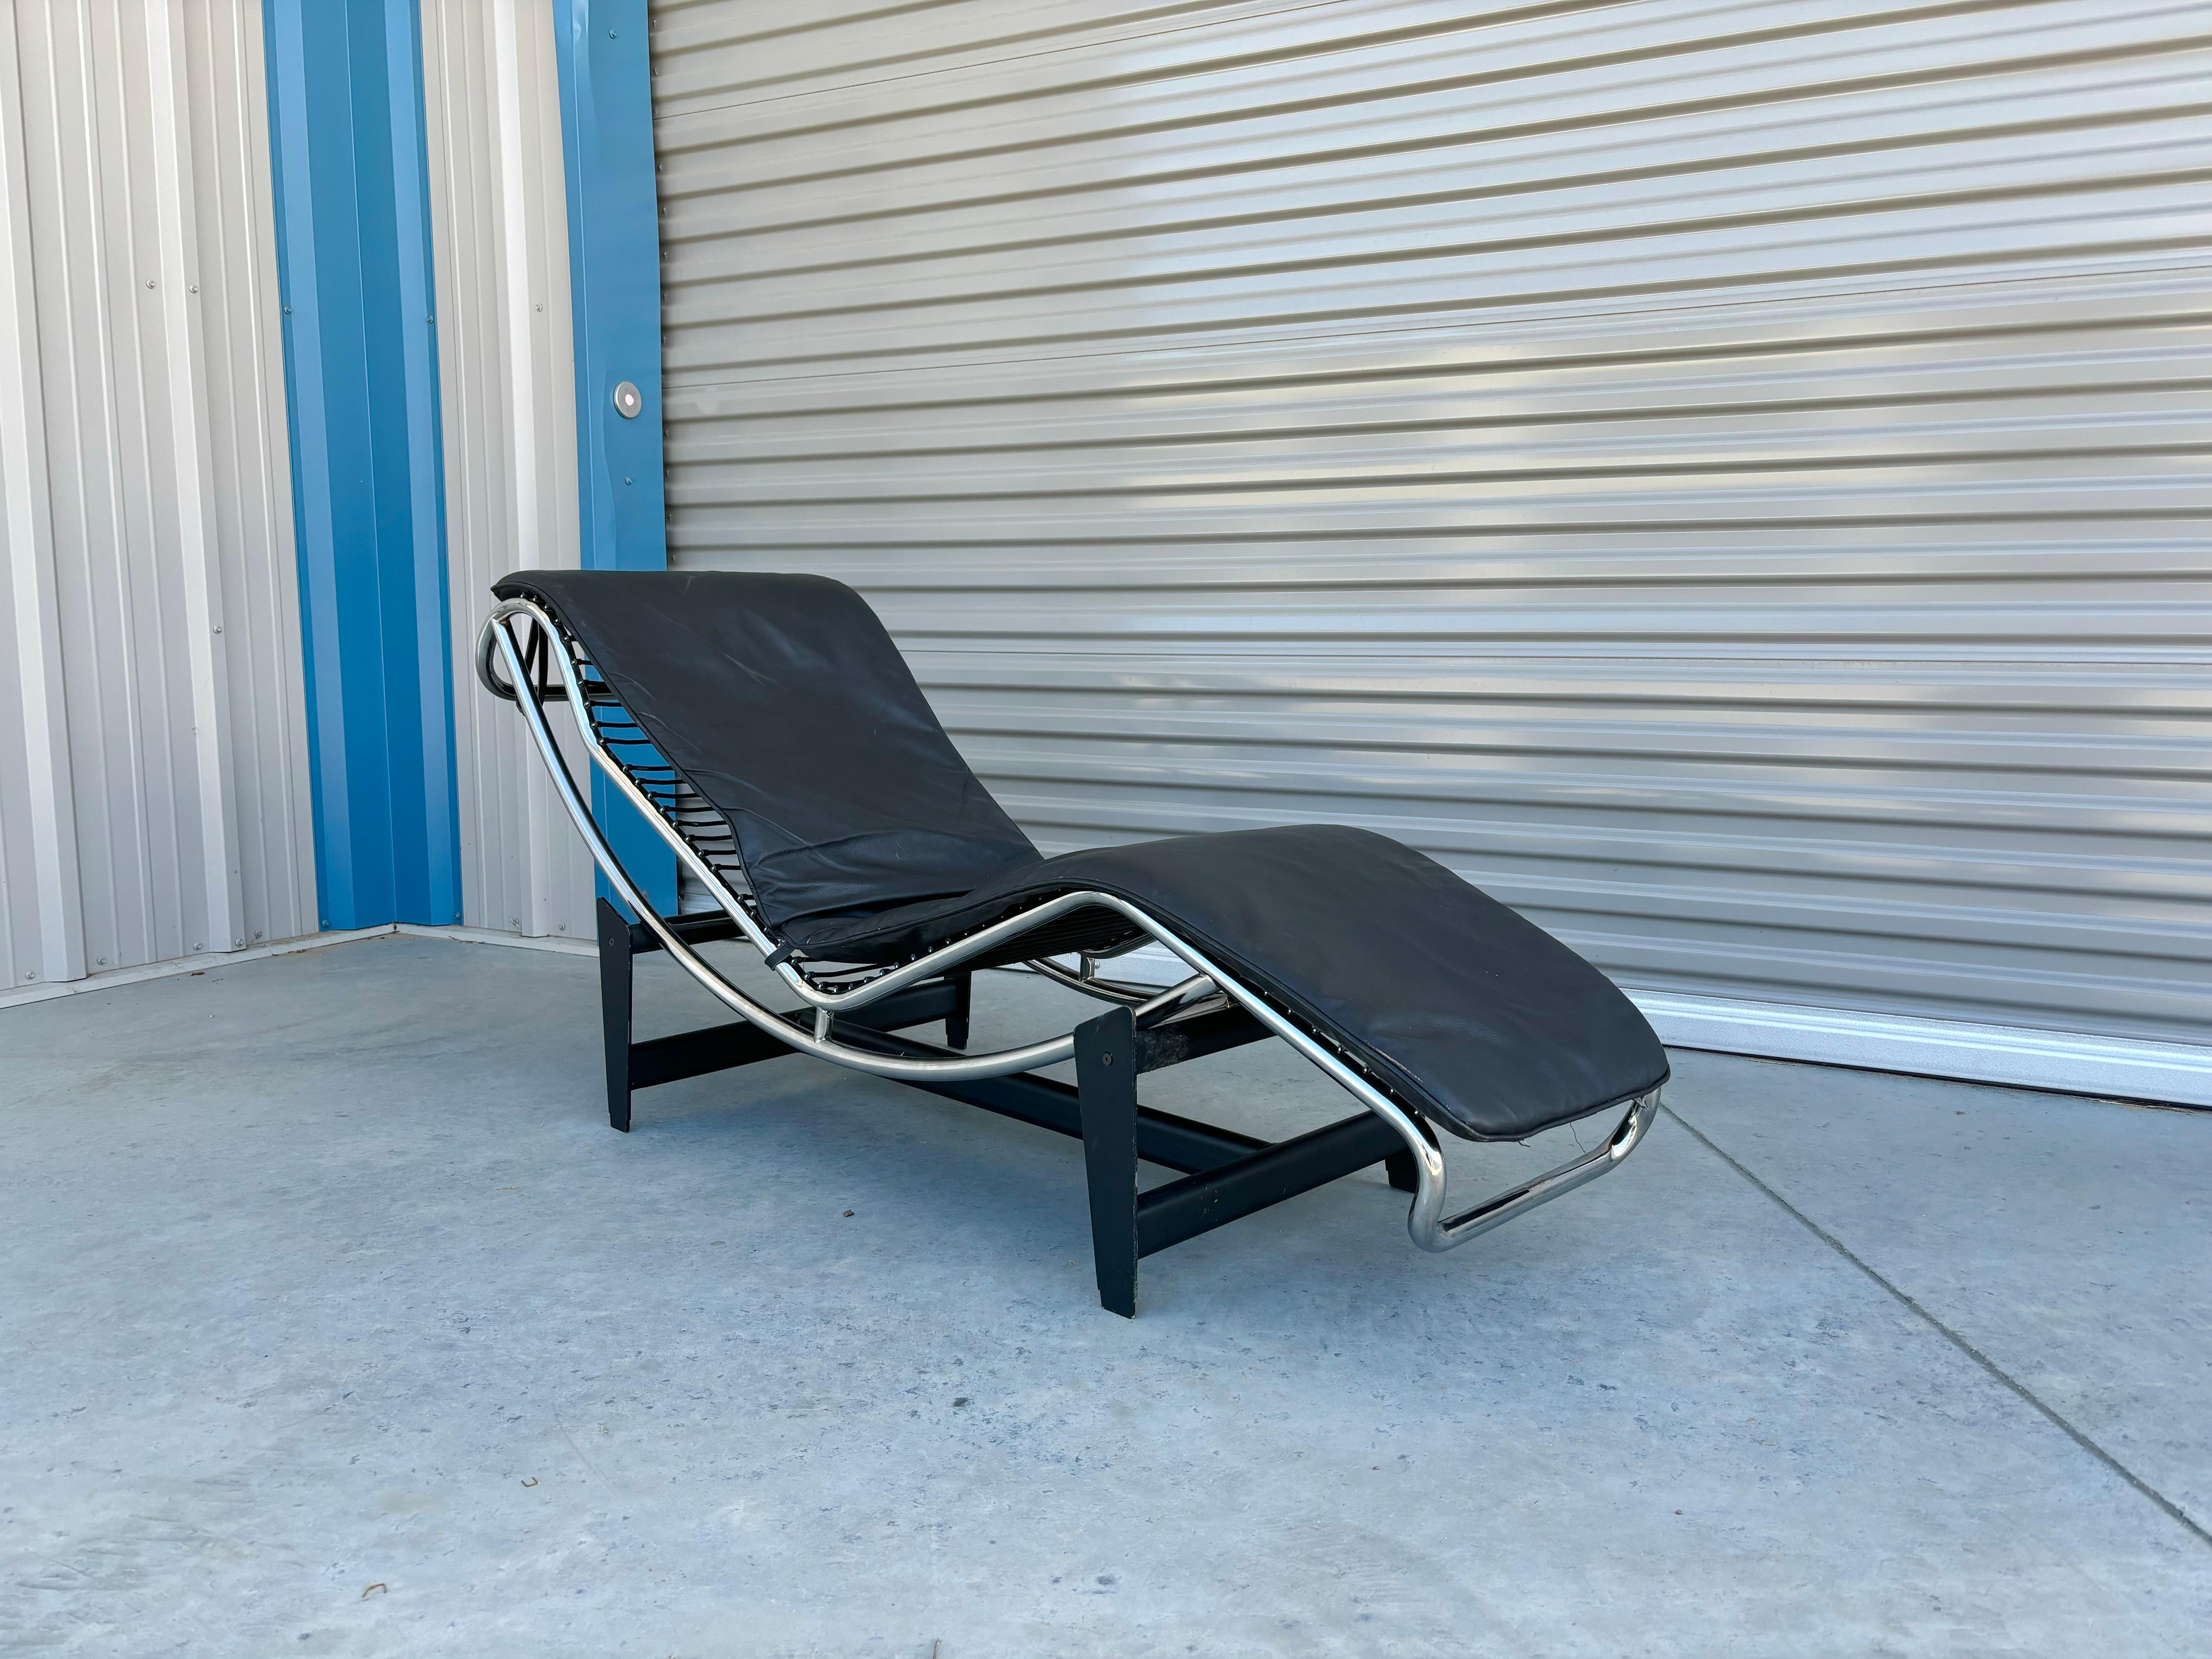 Chaise longue du milieu du siècle, conçue et fabriquée en Italie vers les années 1970. Cette superbe chaise longue est recouverte de cuir noir et fixée à un élégant cadre chromé. Cette pièce se distingue par sa structure unique en métal noir qui